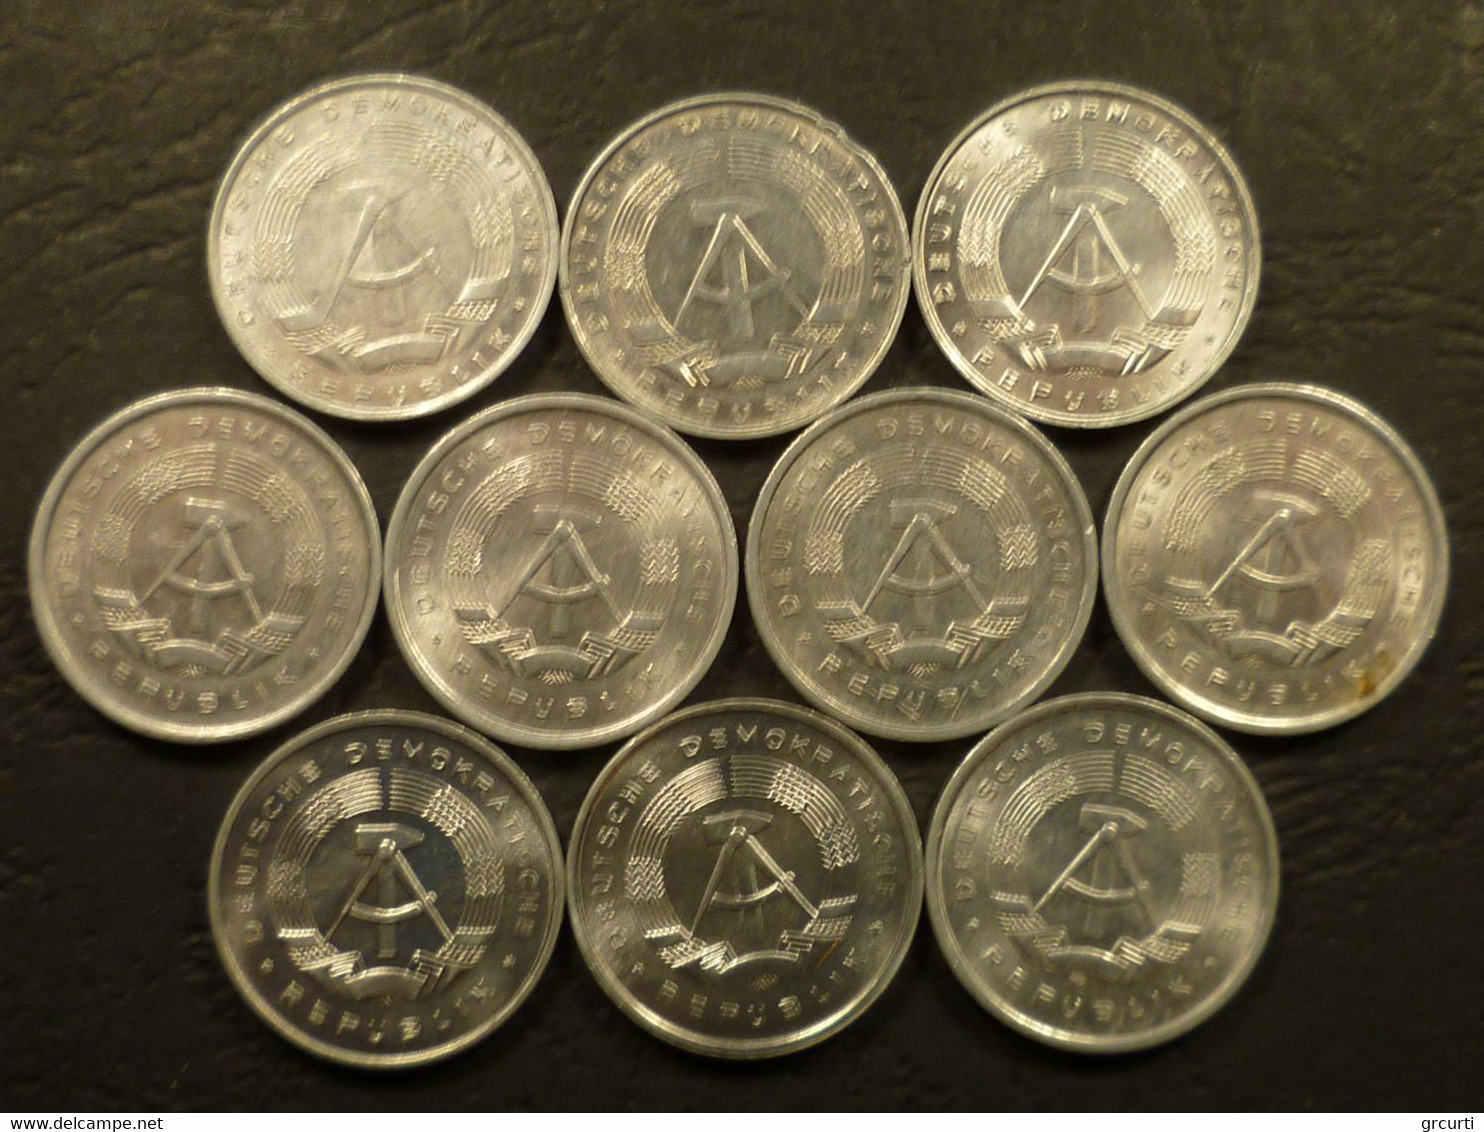 Germania, Repubblica Democratica - D.D.R. Lotto 94 di monete in metalli comuni emesse fra il 1948 e il 1987